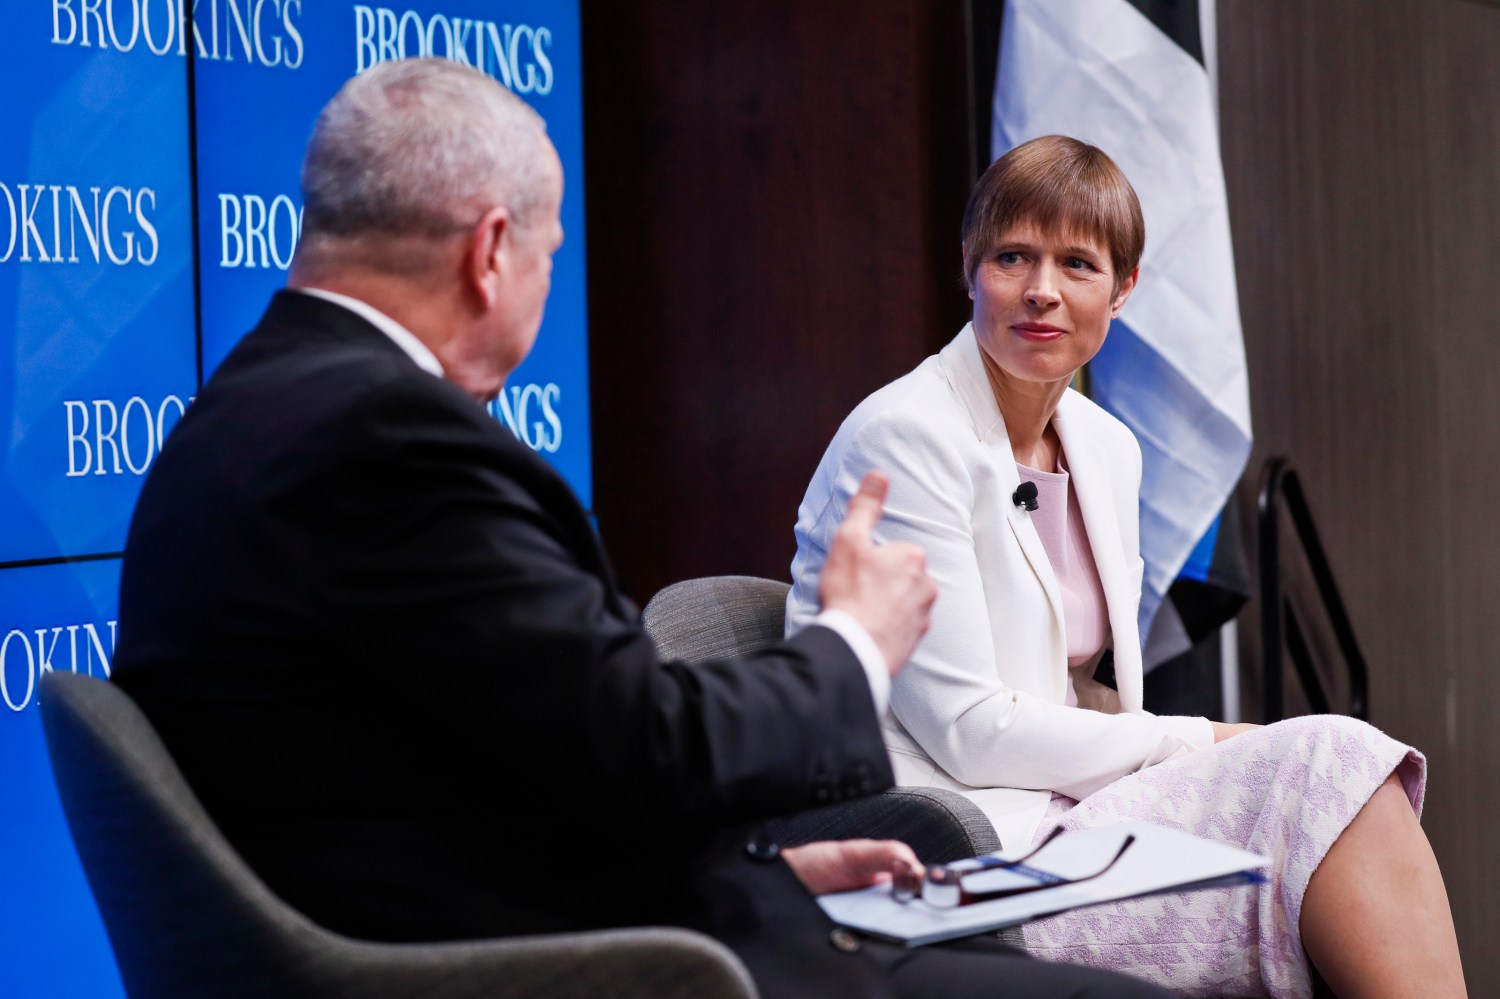 The president of Estonia speaks at Brookings.